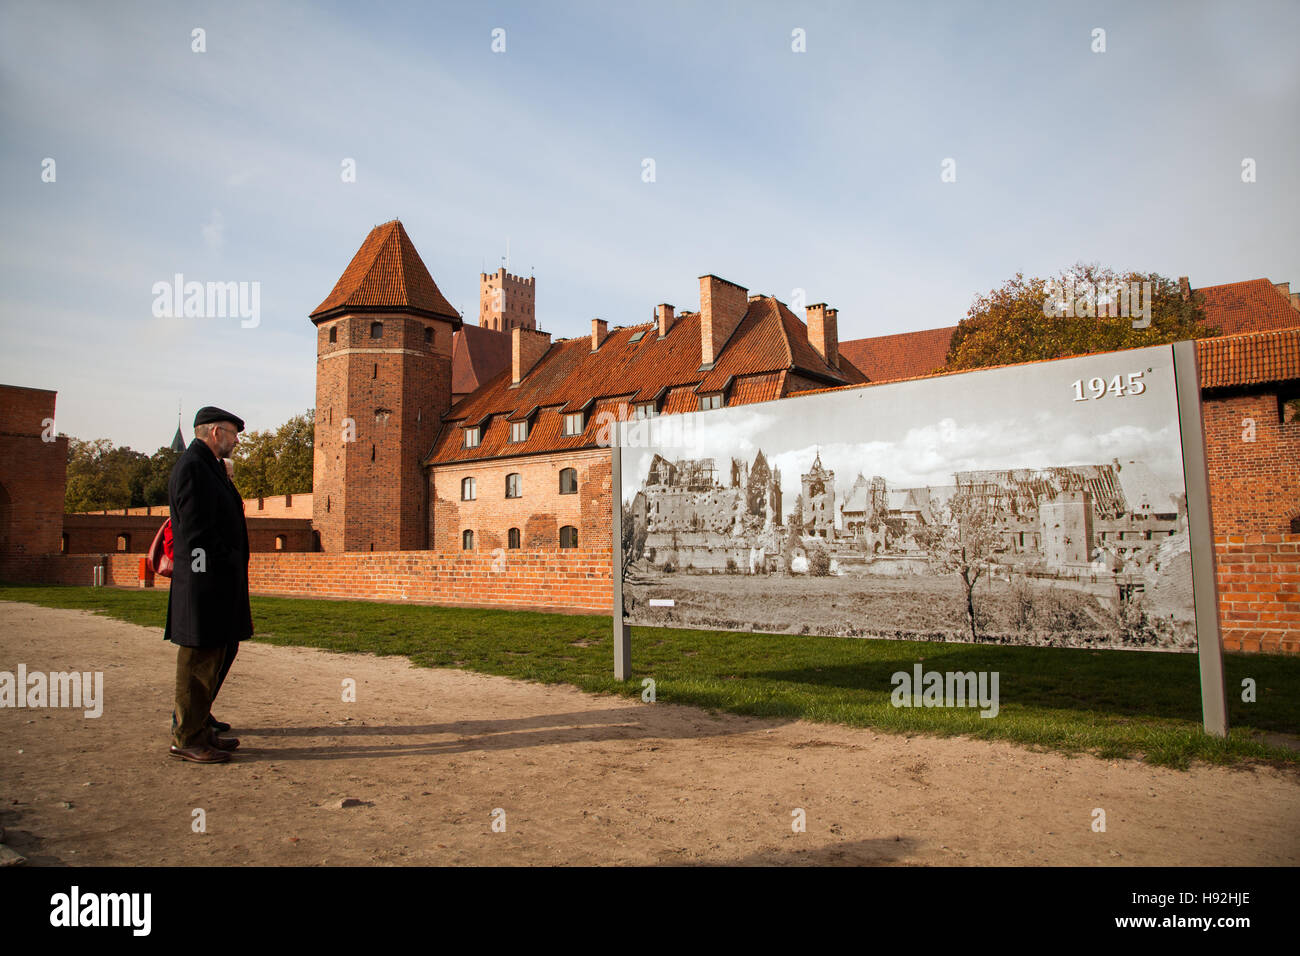 Homme debout à l'extérieur le château de Malbork Pologne regarder une affiche montrant les destructions causées pendant la seconde guerre mondiale Banque D'Images